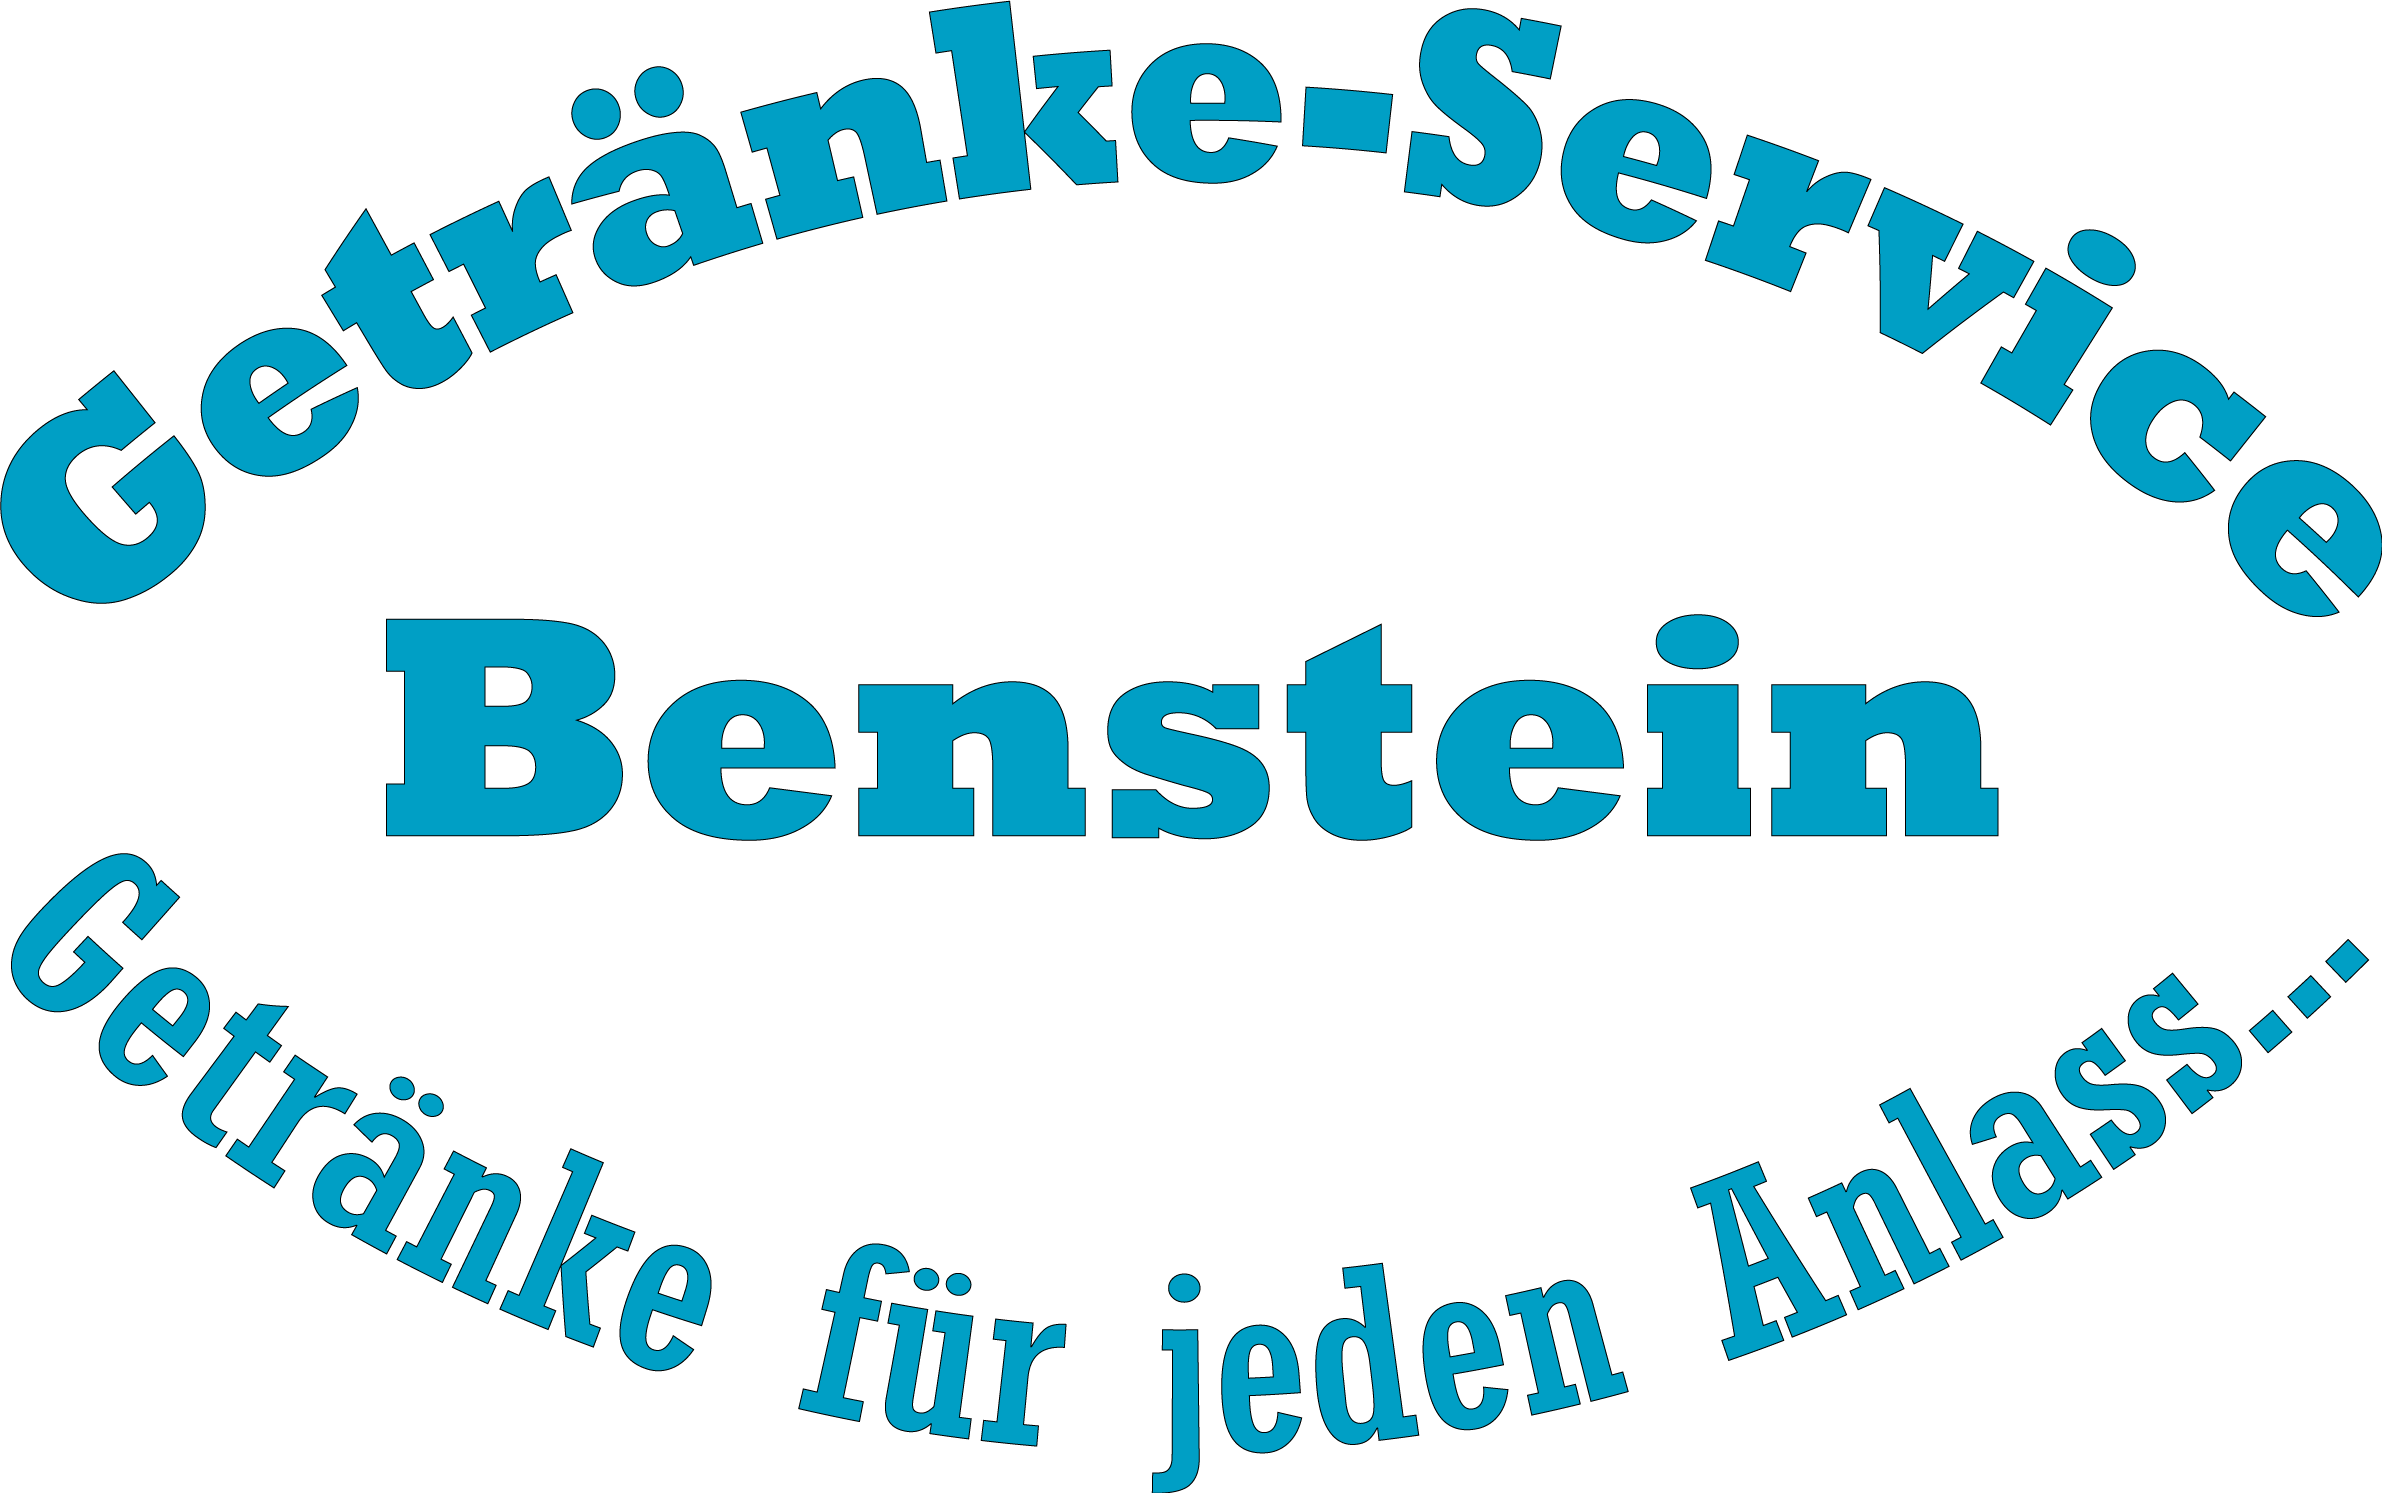 (c) Getraenke-service-benstein.de